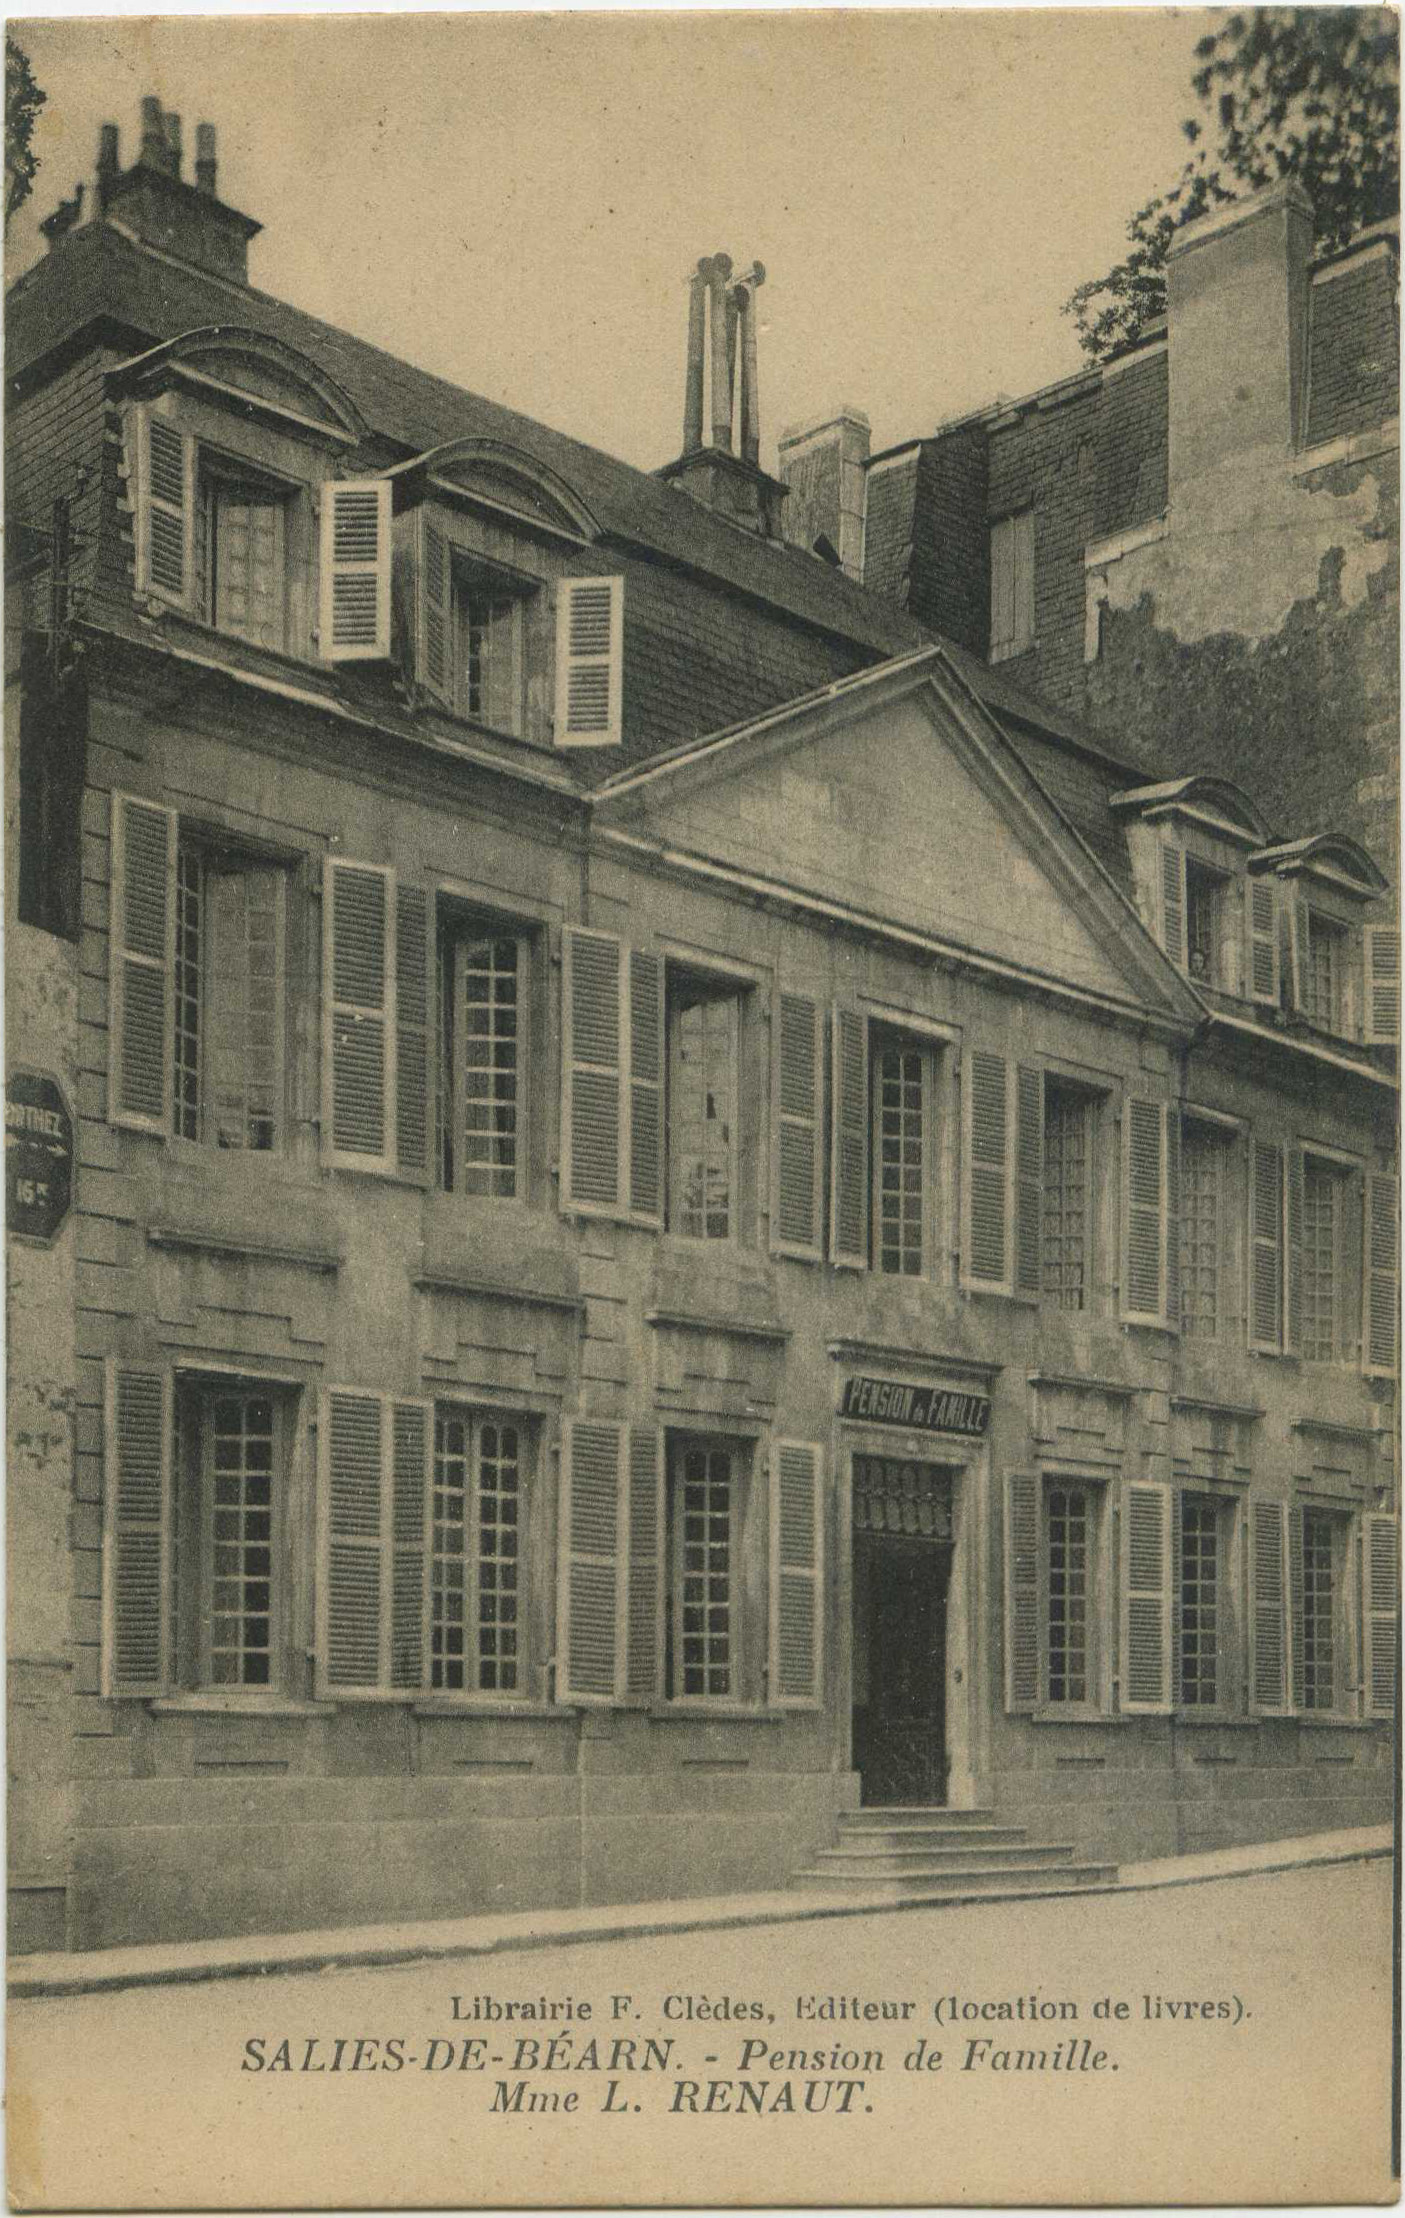 Salies-de-Béarn - Pension de Famille. Mme L. RENAUT.